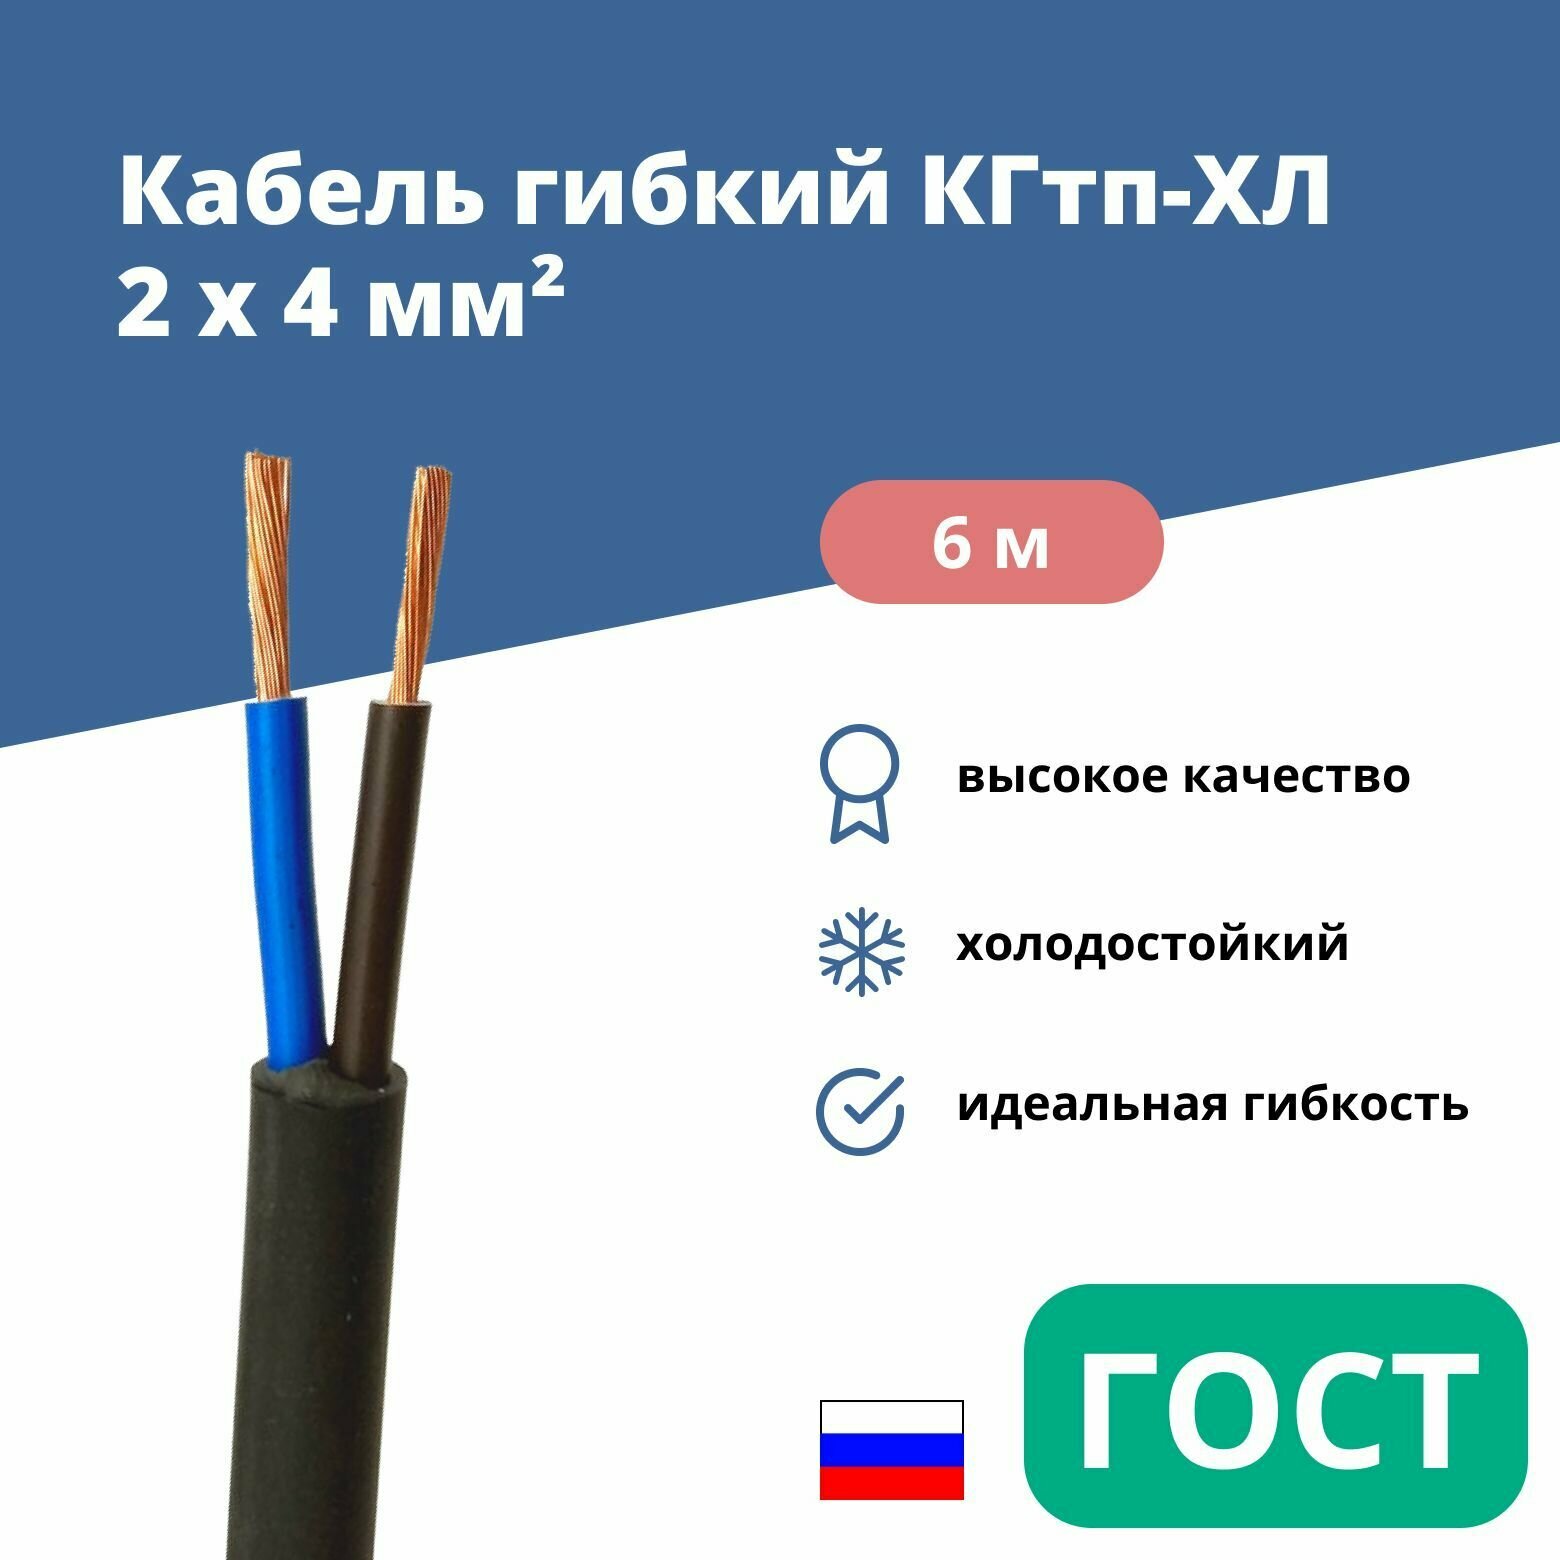 Силовой сварочный кабель гибкий кгтп-хл 2х4 уп. 6м.